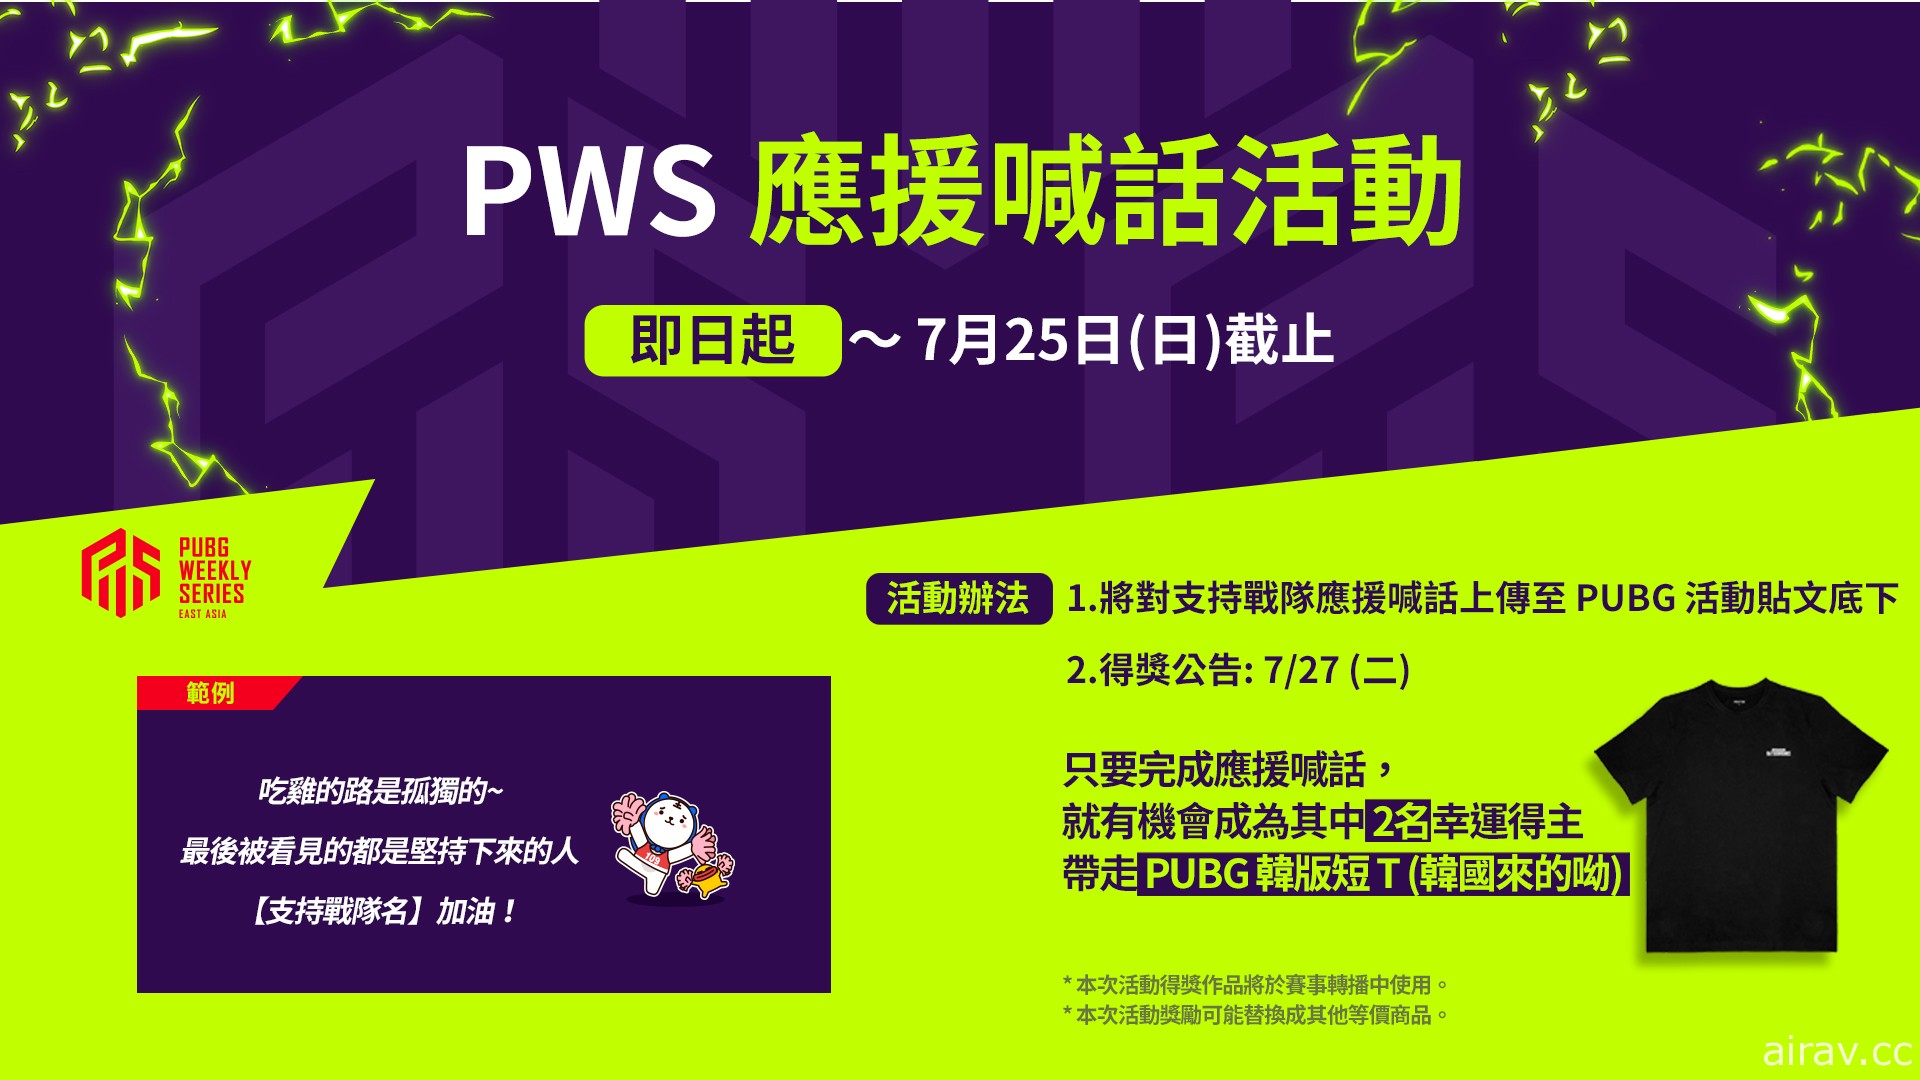 《绝地求生》PWS 东亚联赛战火再起 第一周赛事今晚开打